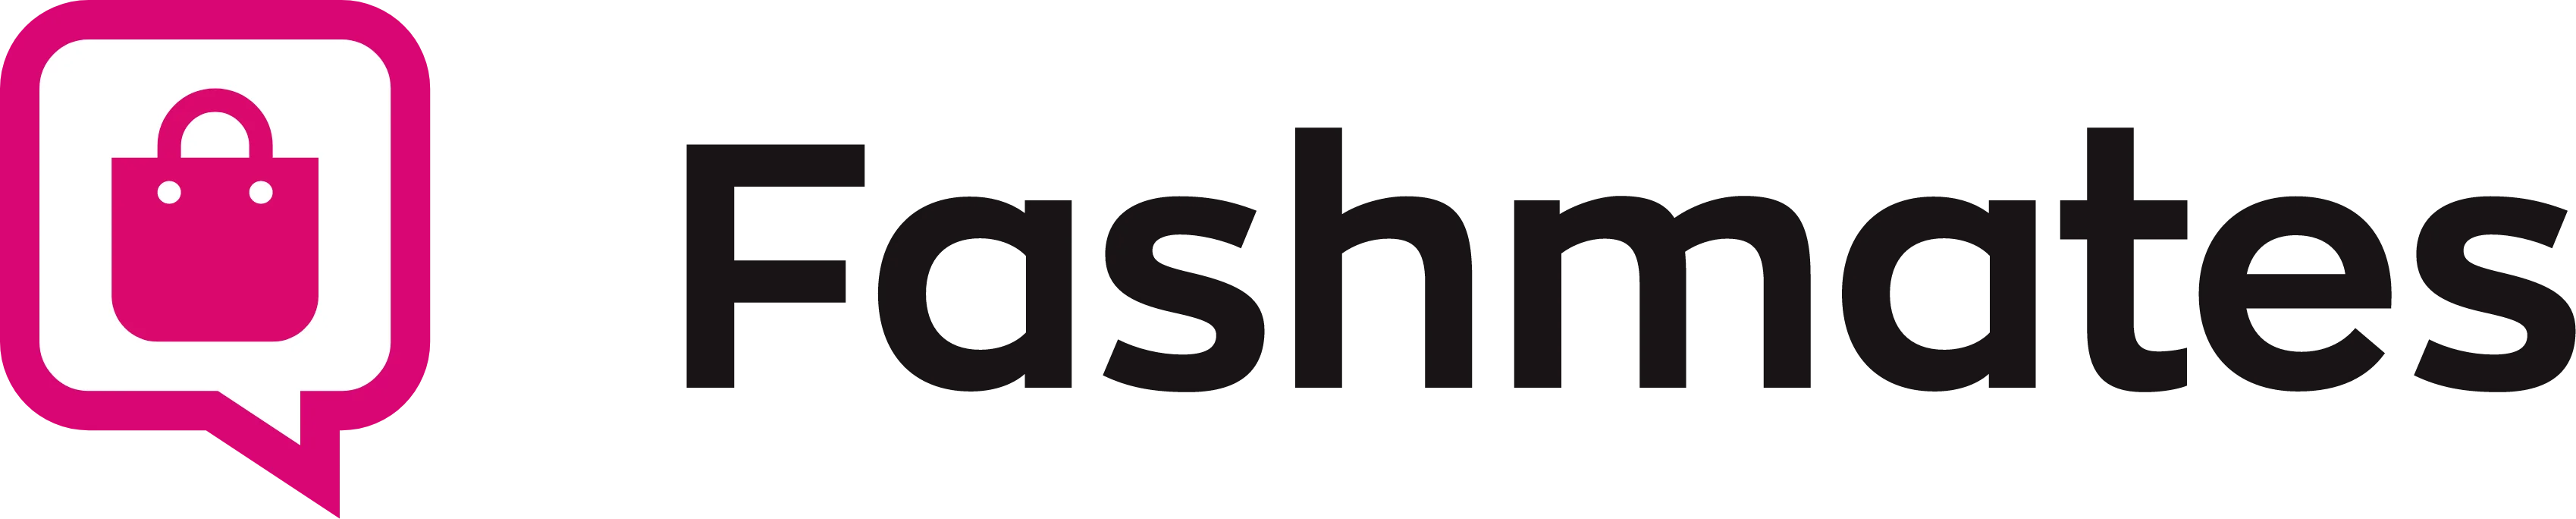 fashmates-logo